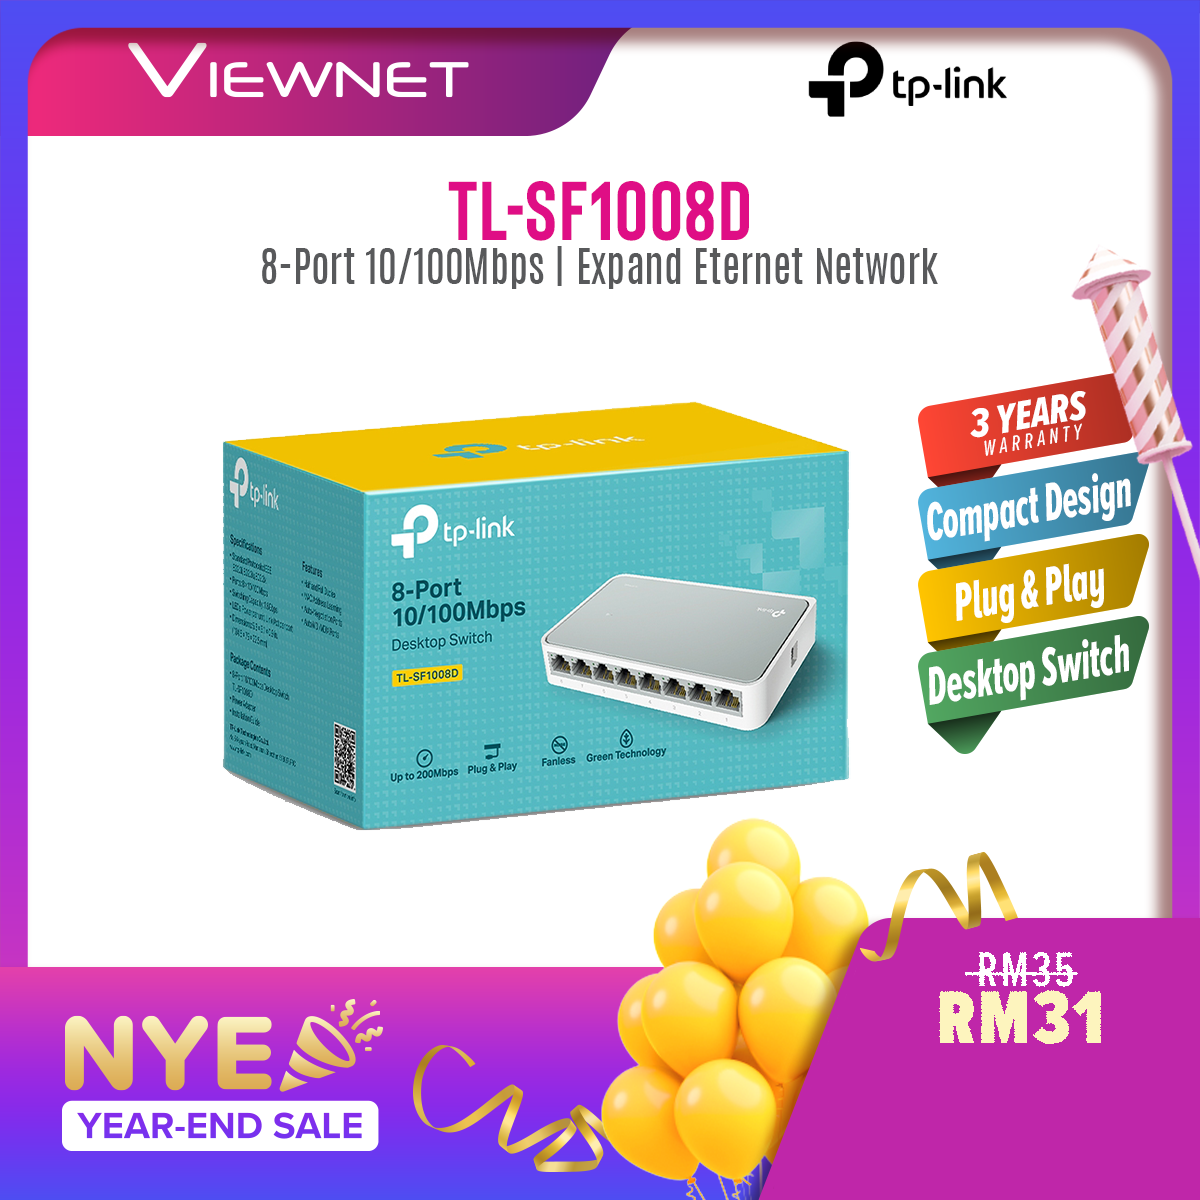 TP-LINK TL-SF1008D 8-Port 10/100Mbps Desktop Network Switch